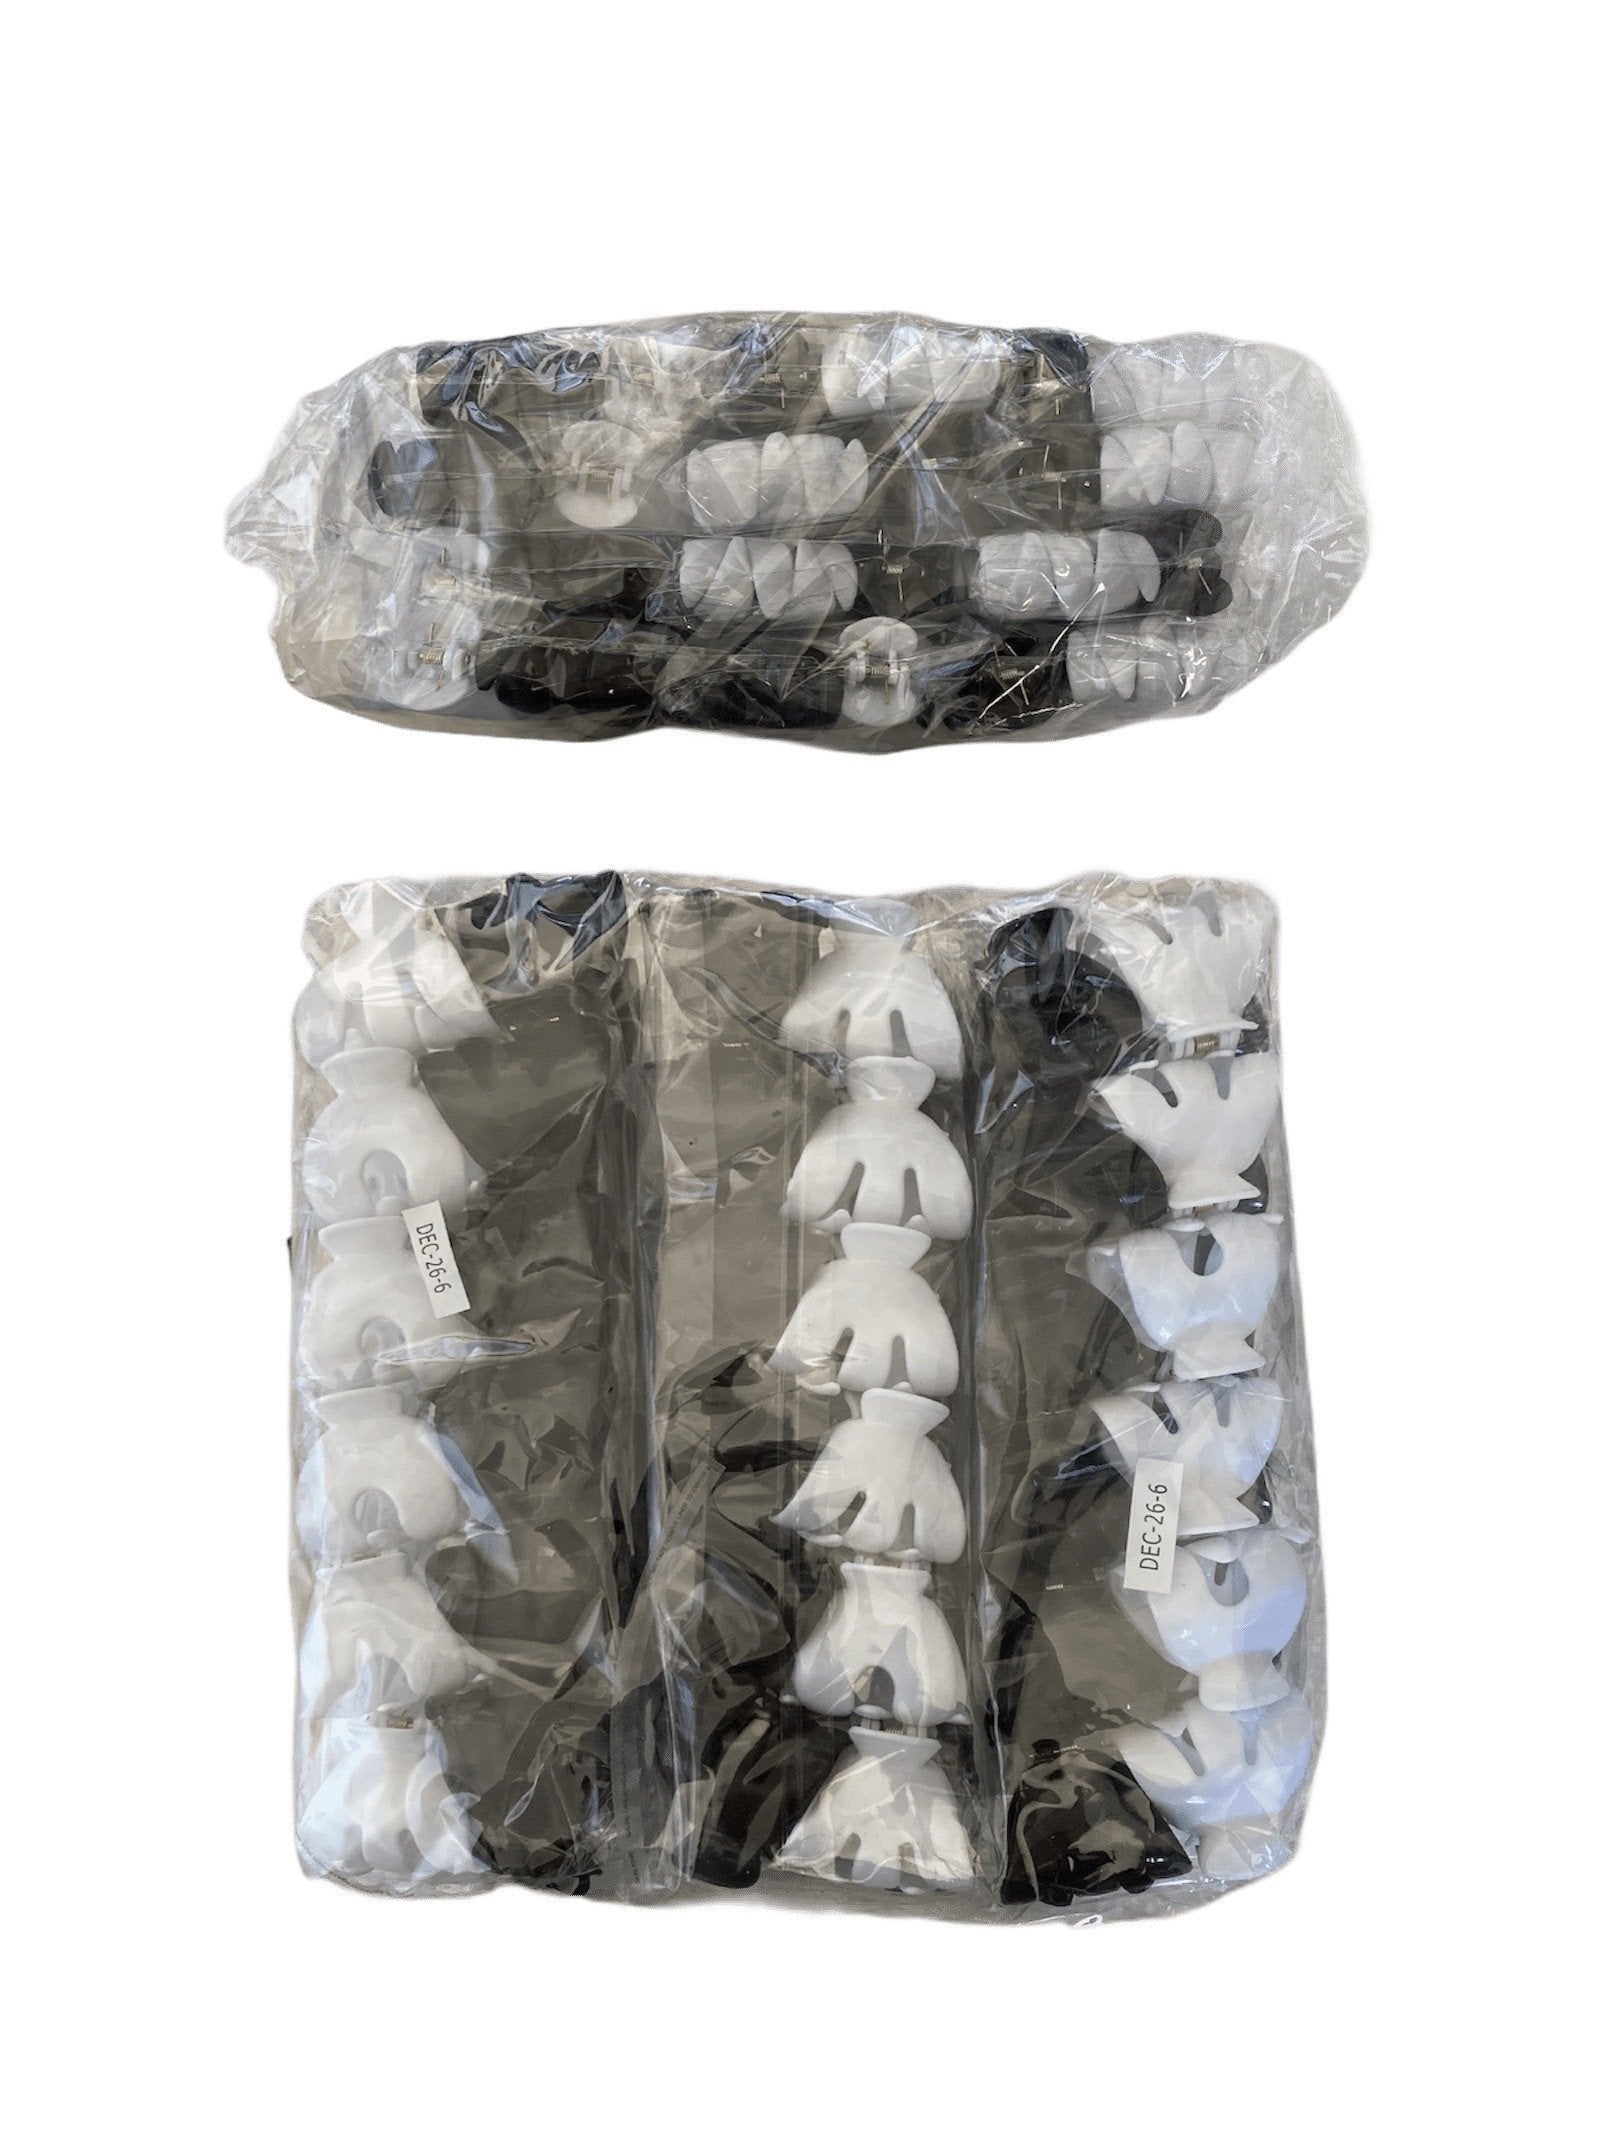 LOT DE 6 PAQUETS - petites Pinces crabes cheveux noir et blanc (x12) 2,50€/paquet | Grossiste-pro